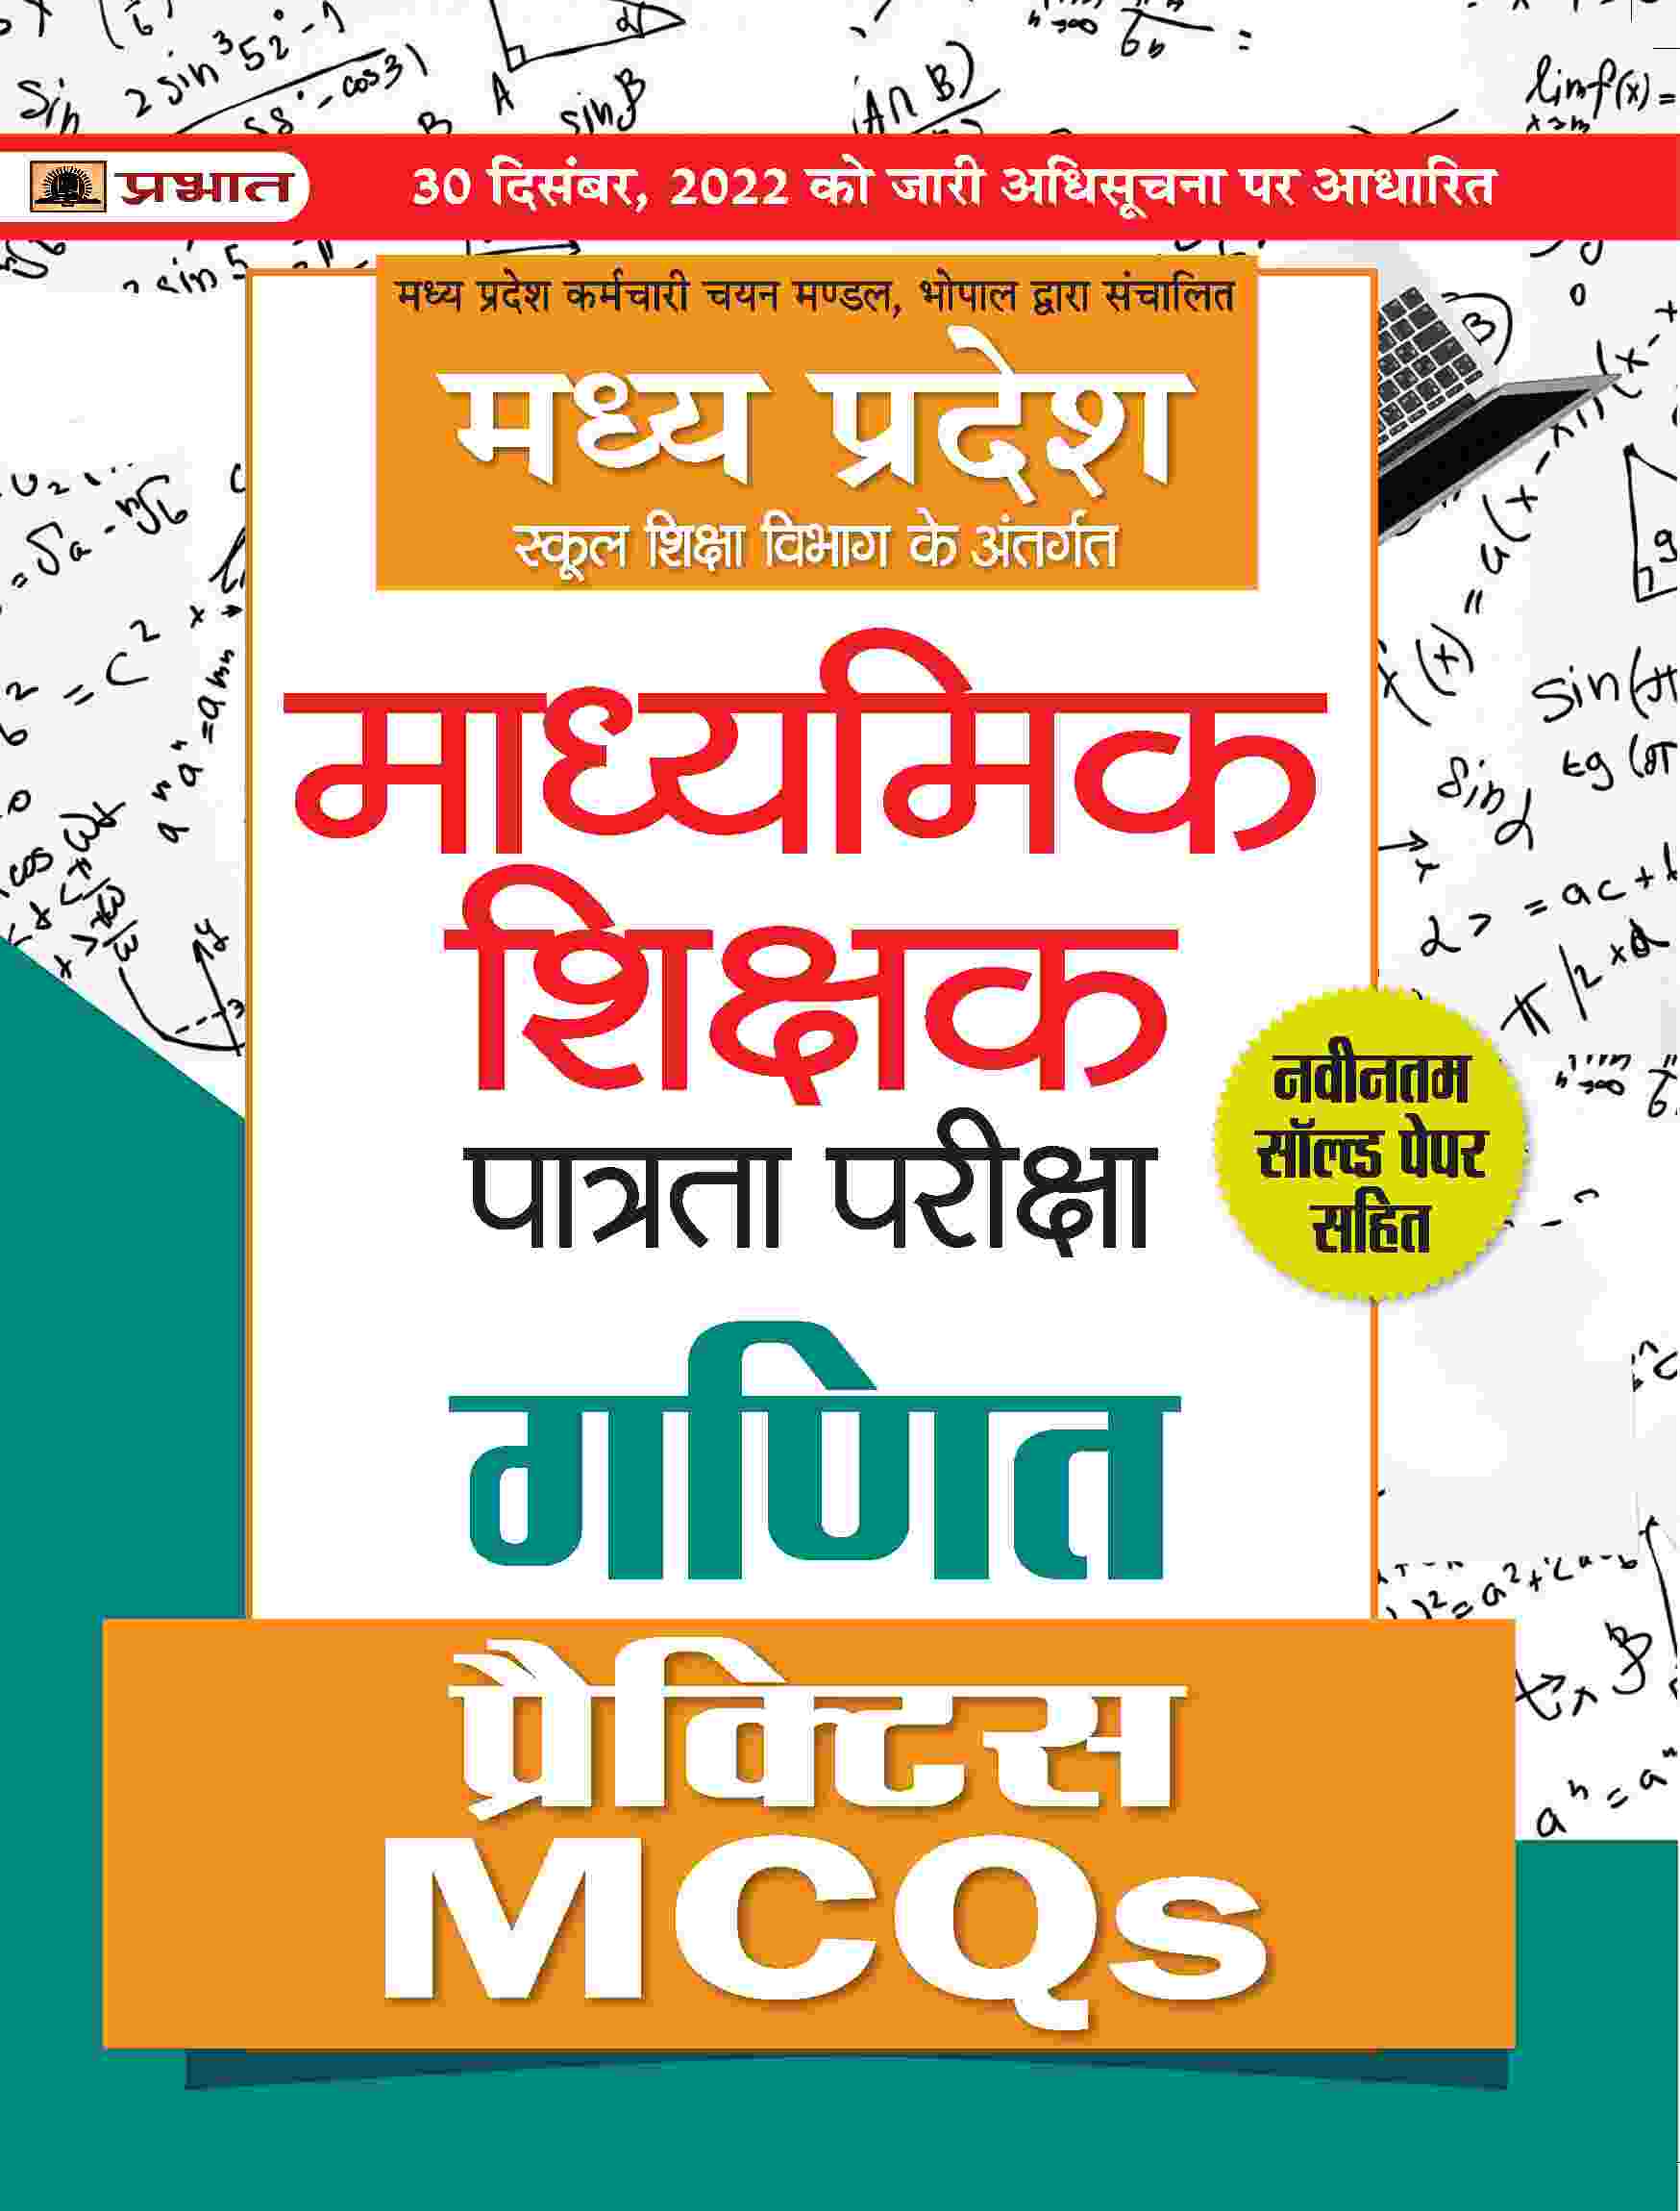 Madhya Pradesh Madhyamik Shikshak Patrata Pareeksha Ganit Practice MCQs (MPTET Maths Practice Sets)